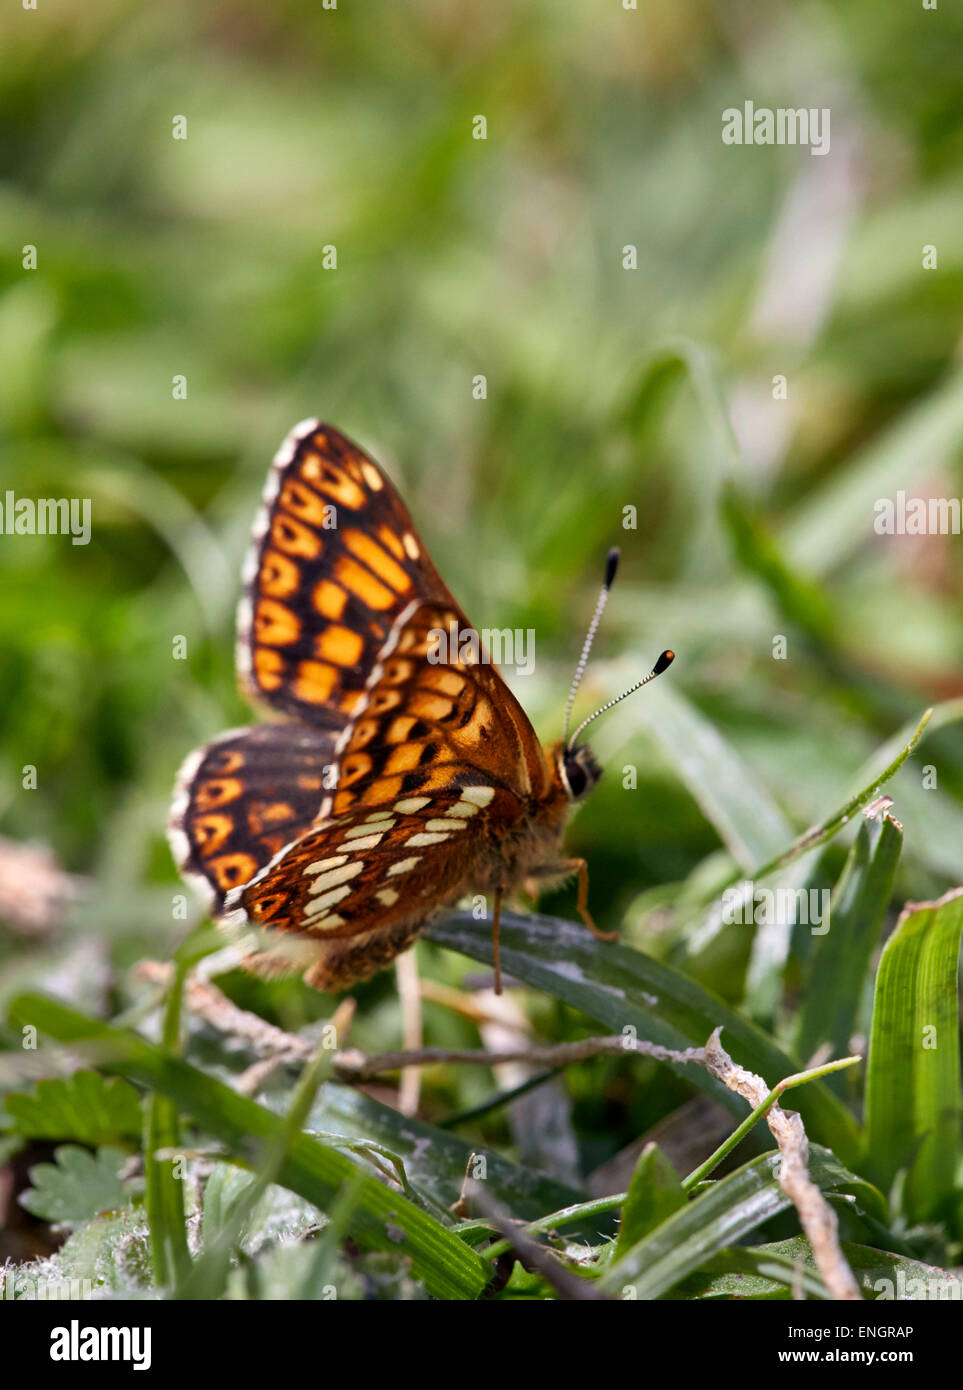 Herzog von Burgund Schmetterling (männlich). Noar Hill Nature Reserve, Selborne, Hampshire, England. Stockfoto